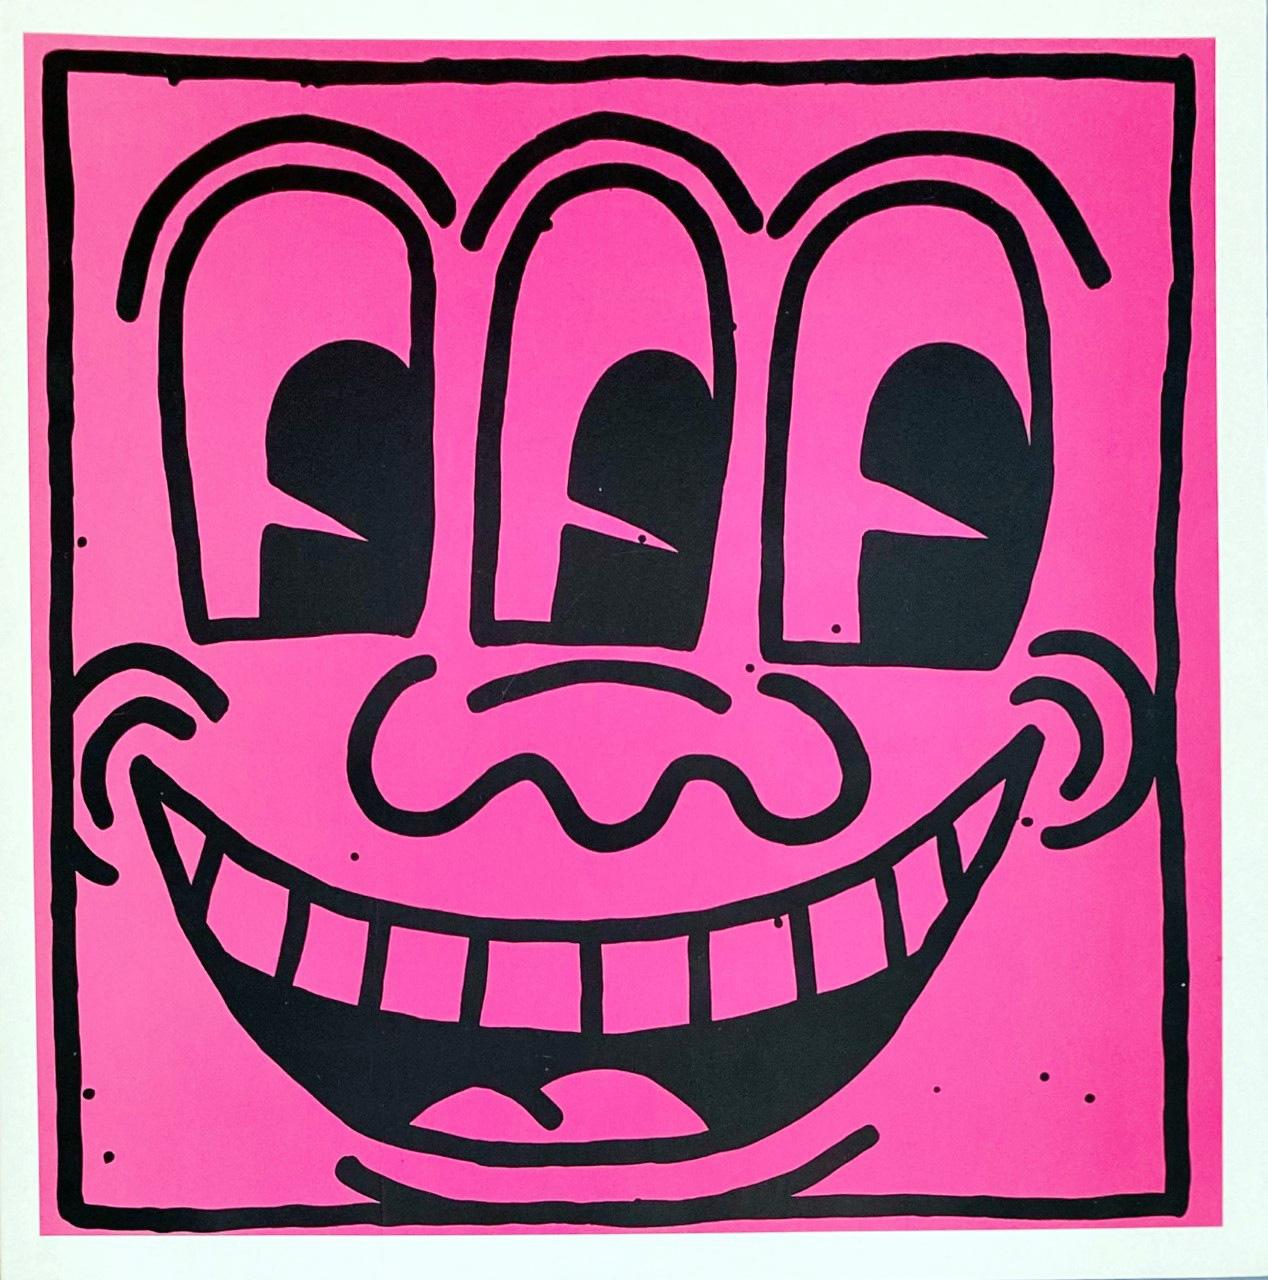 Keith Haring "Important Early Works from the Estate" :

Rare annonce originale de l'exposition Keith Haring de 1991 qui s'est tenue à la Tony Shafrazi Gallery New York à l'automne/hiver précédant la mort de Haring (du 31 octobre 1991 au 9 janvier